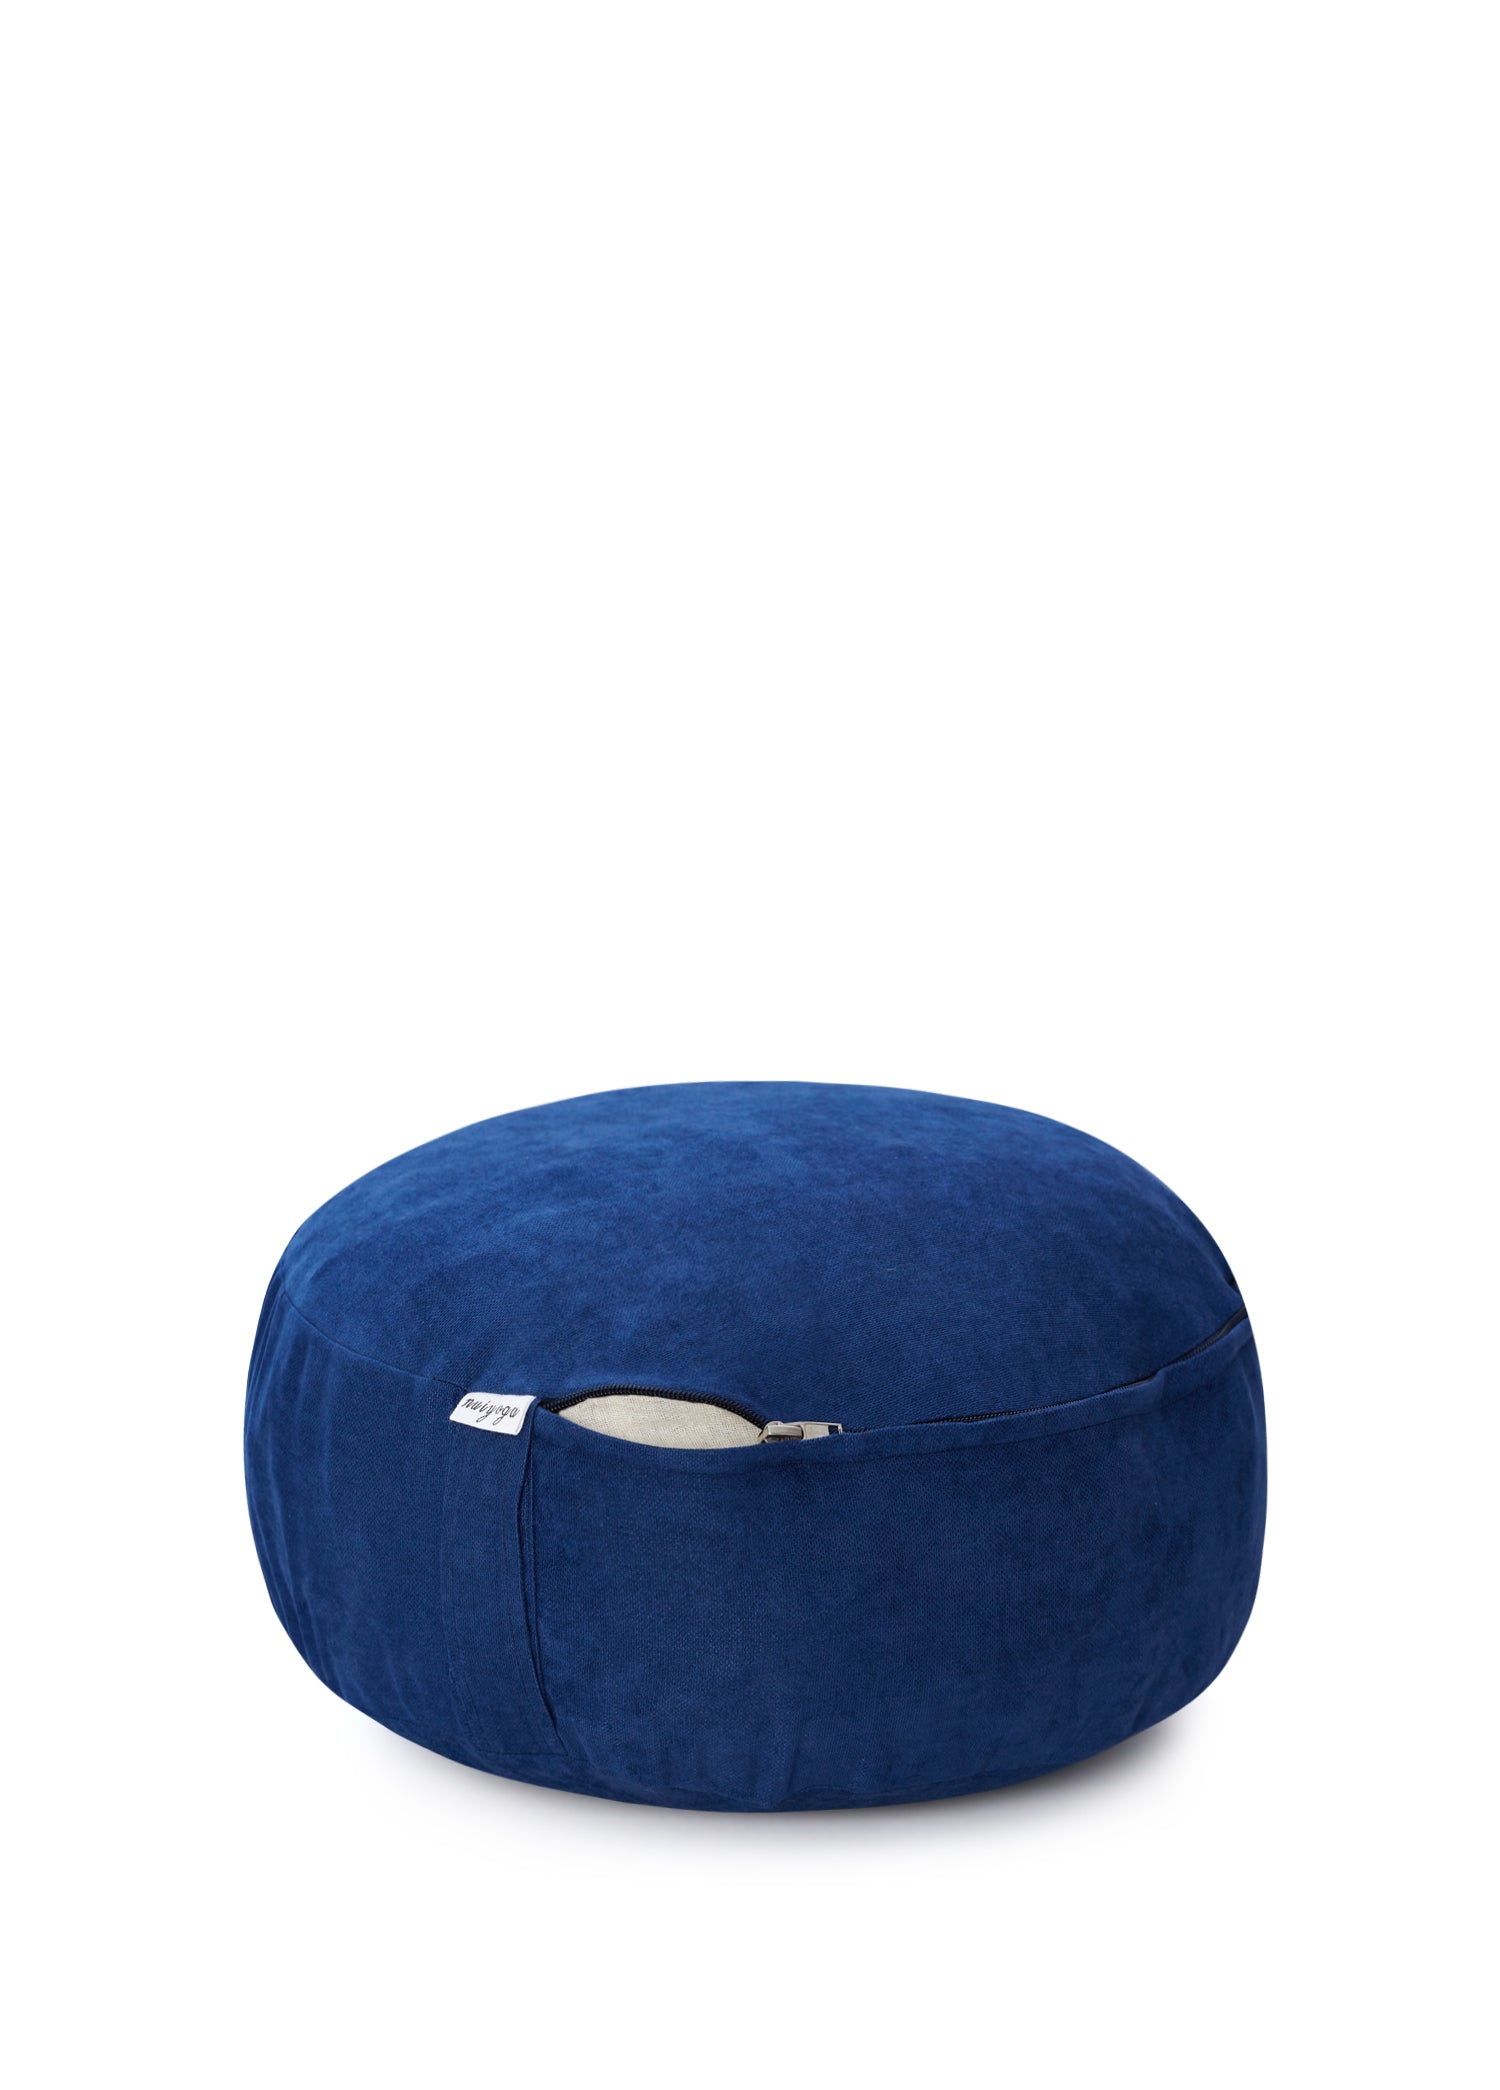 Dark Blue Meditation Cushion 40 Cm Diameter